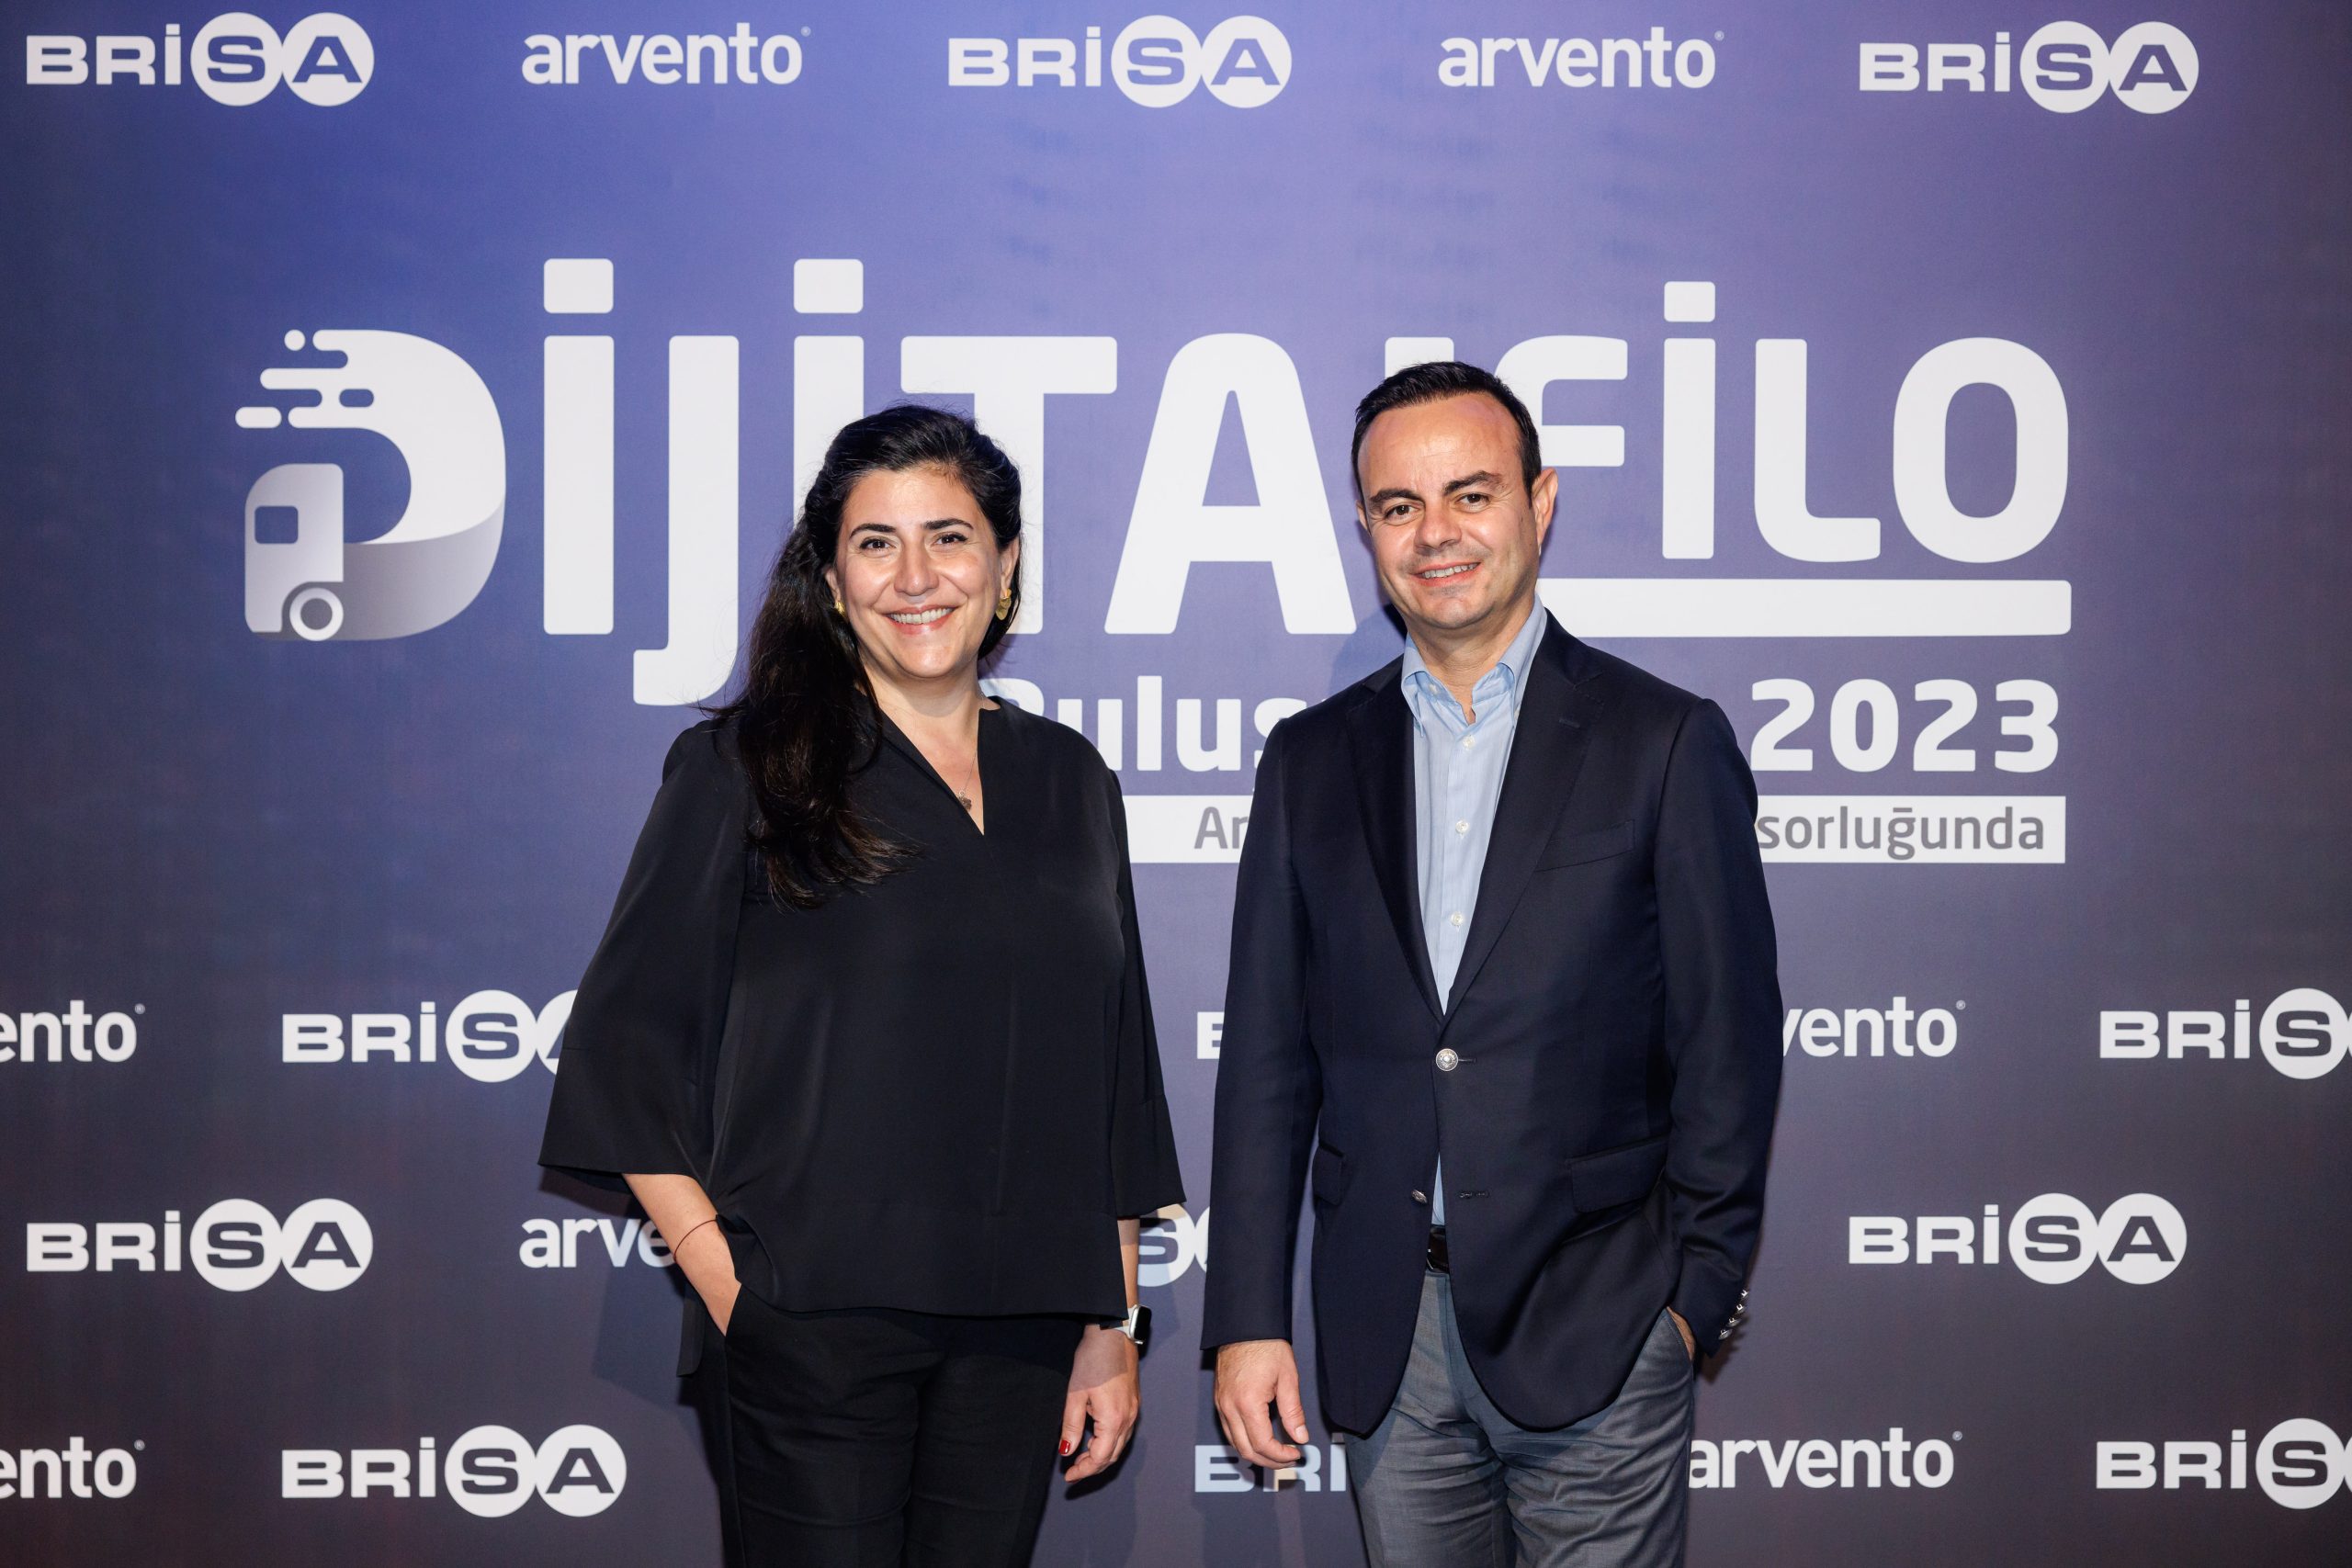 Brisa ve Arvento, Dijital Filo Buluşmaları’nda sektör paydaşlarını bir araya getirdi